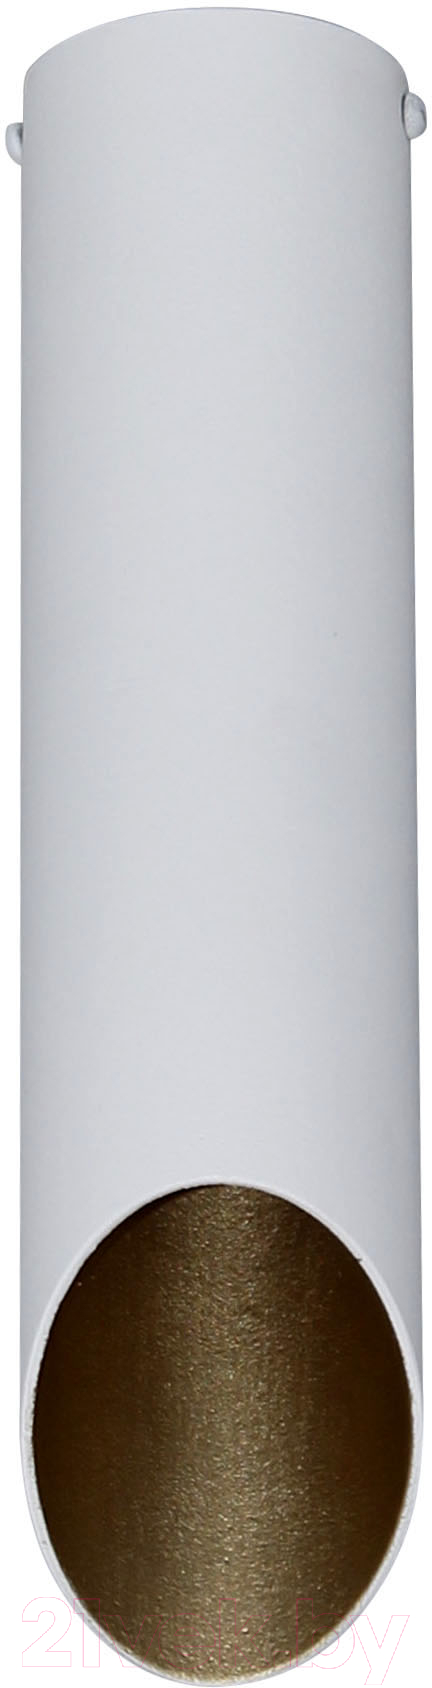 Потолочный светильник Элетех Соната 112 НПБ 01-25-102 G9 / 1005405290